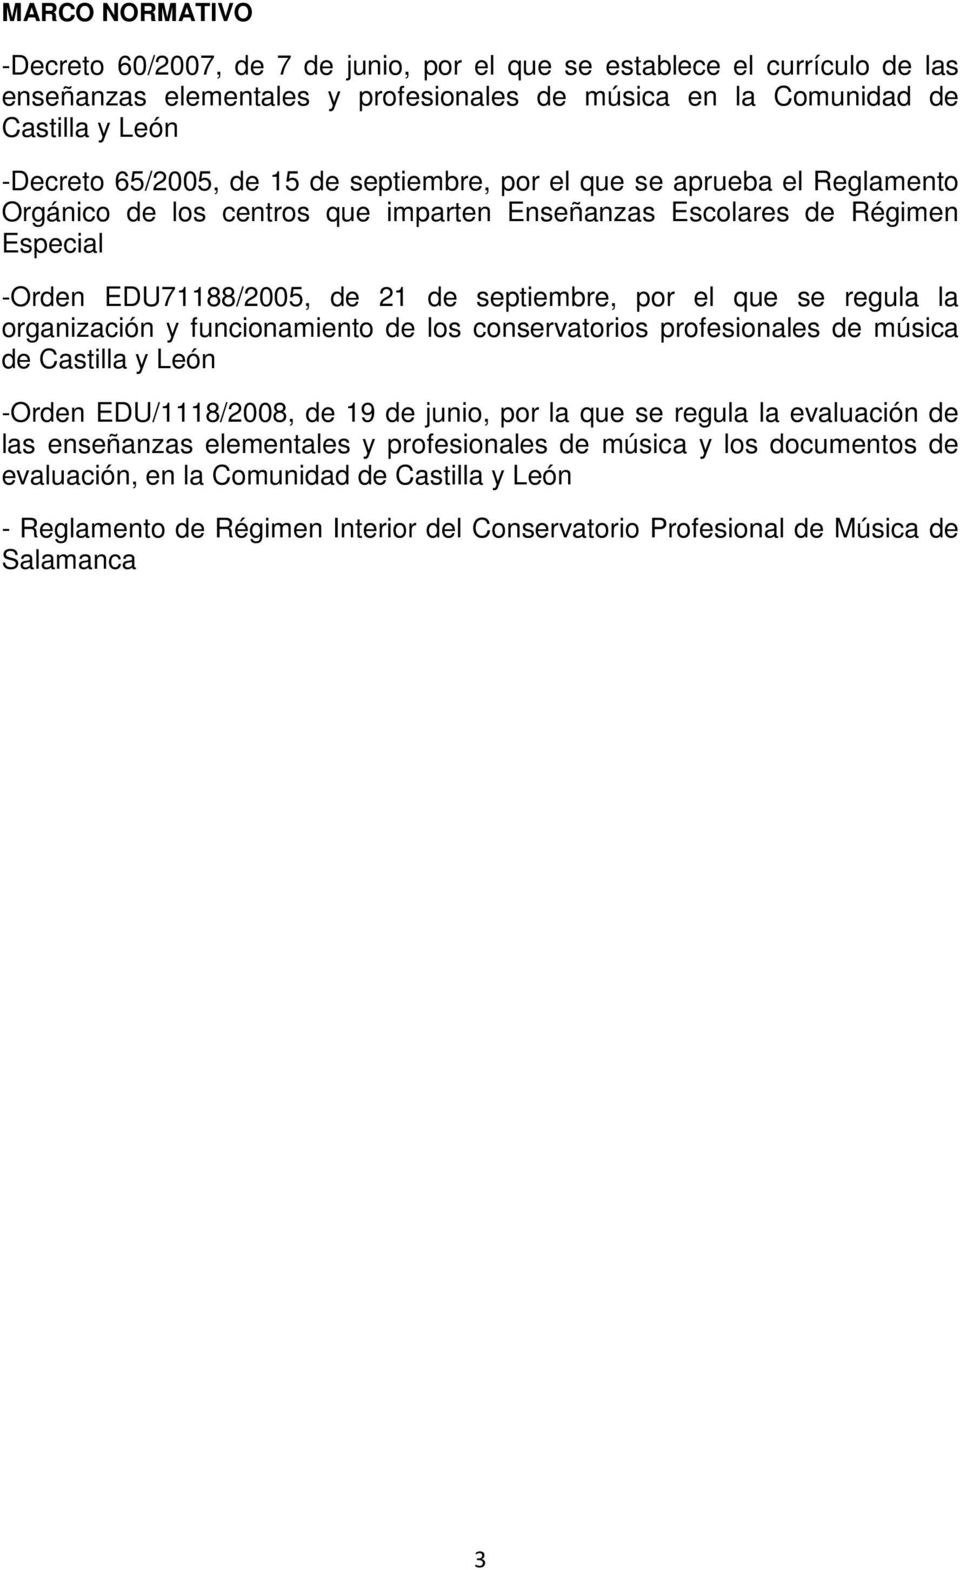 que se regula la organización y funcionamiento de los conservatorios profesionales de música de Castilla y León -Orden EDU/1118/2008, de 19 de junio, por la que se regula la evaluación de las